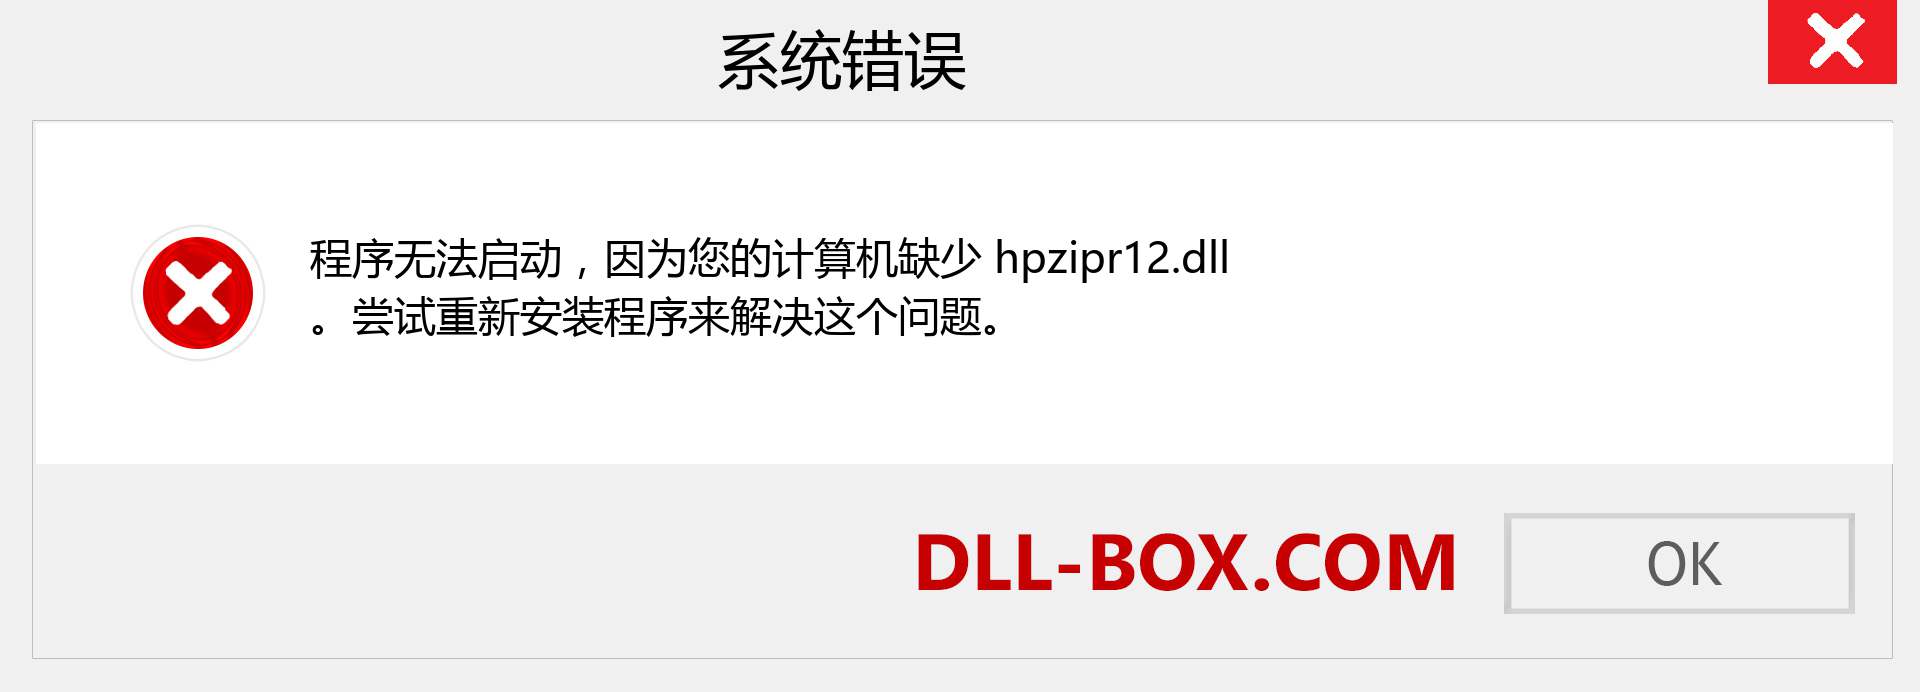 hpzipr12.dll 文件丢失？。 适用于 Windows 7、8、10 的下载 - 修复 Windows、照片、图像上的 hpzipr12 dll 丢失错误